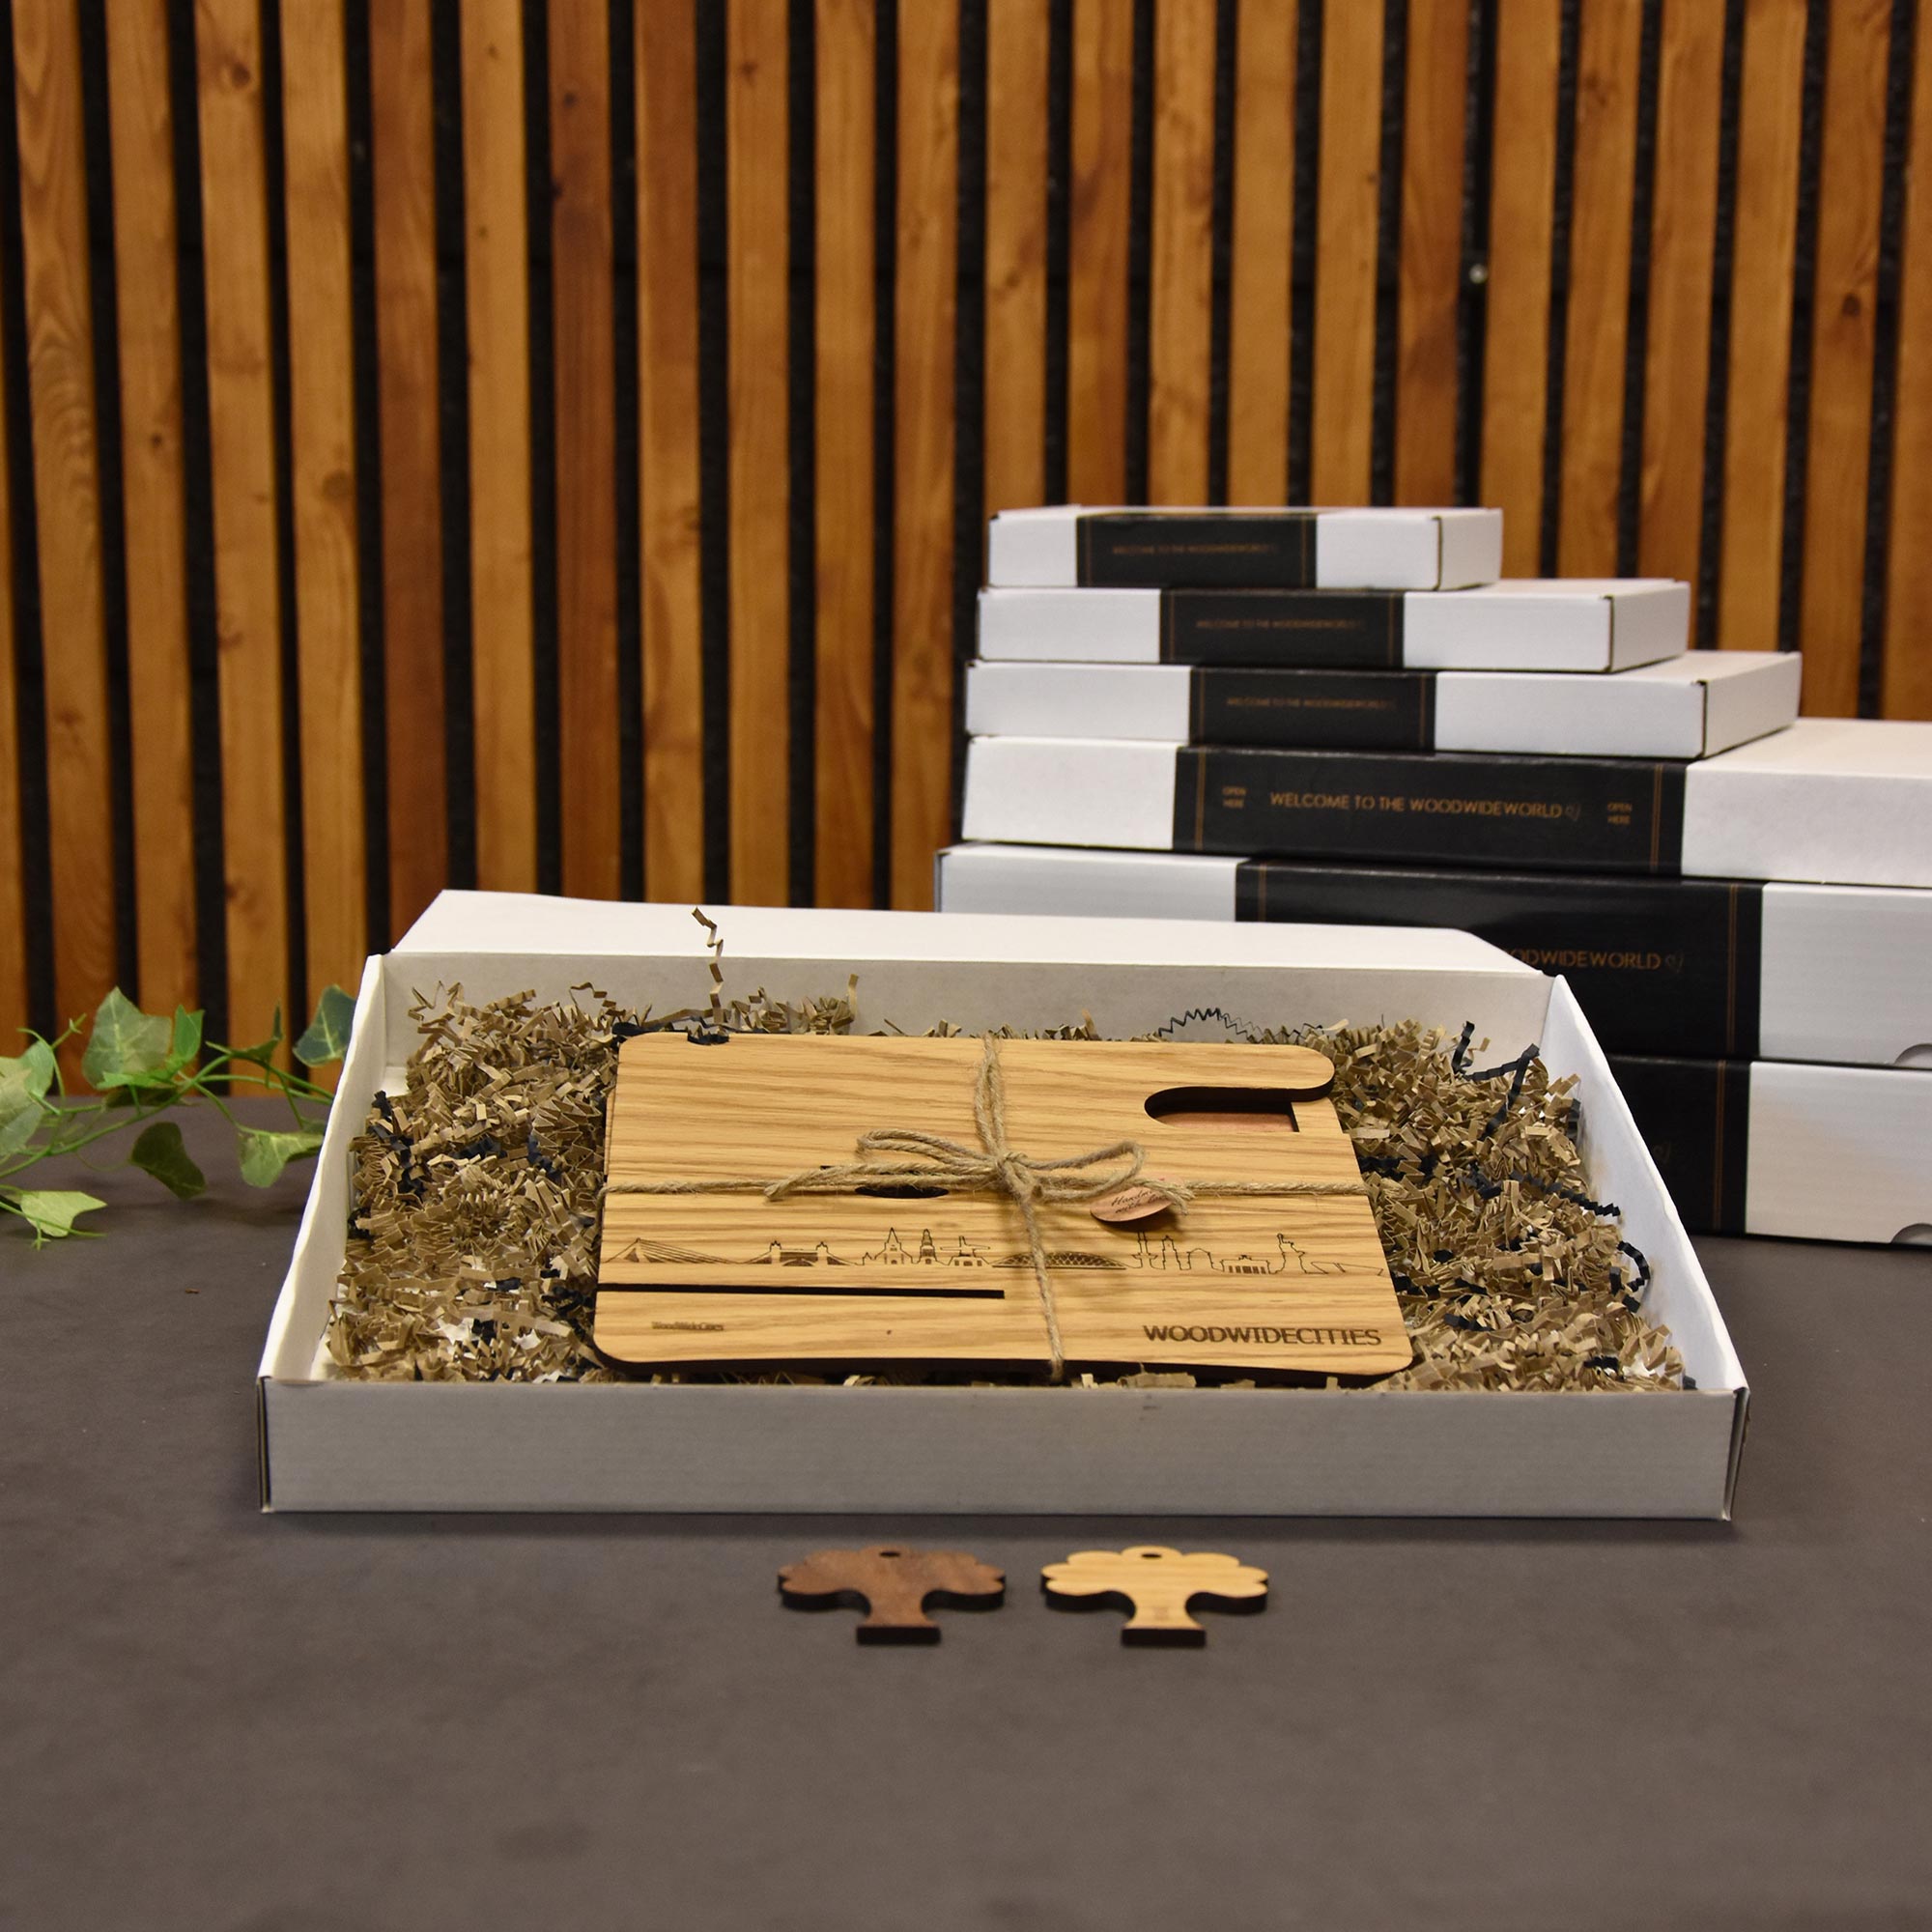 Skyline Desk Organizer Vlaardingen houten cadeau decoratie relatiegeschenk van WoodWideCities